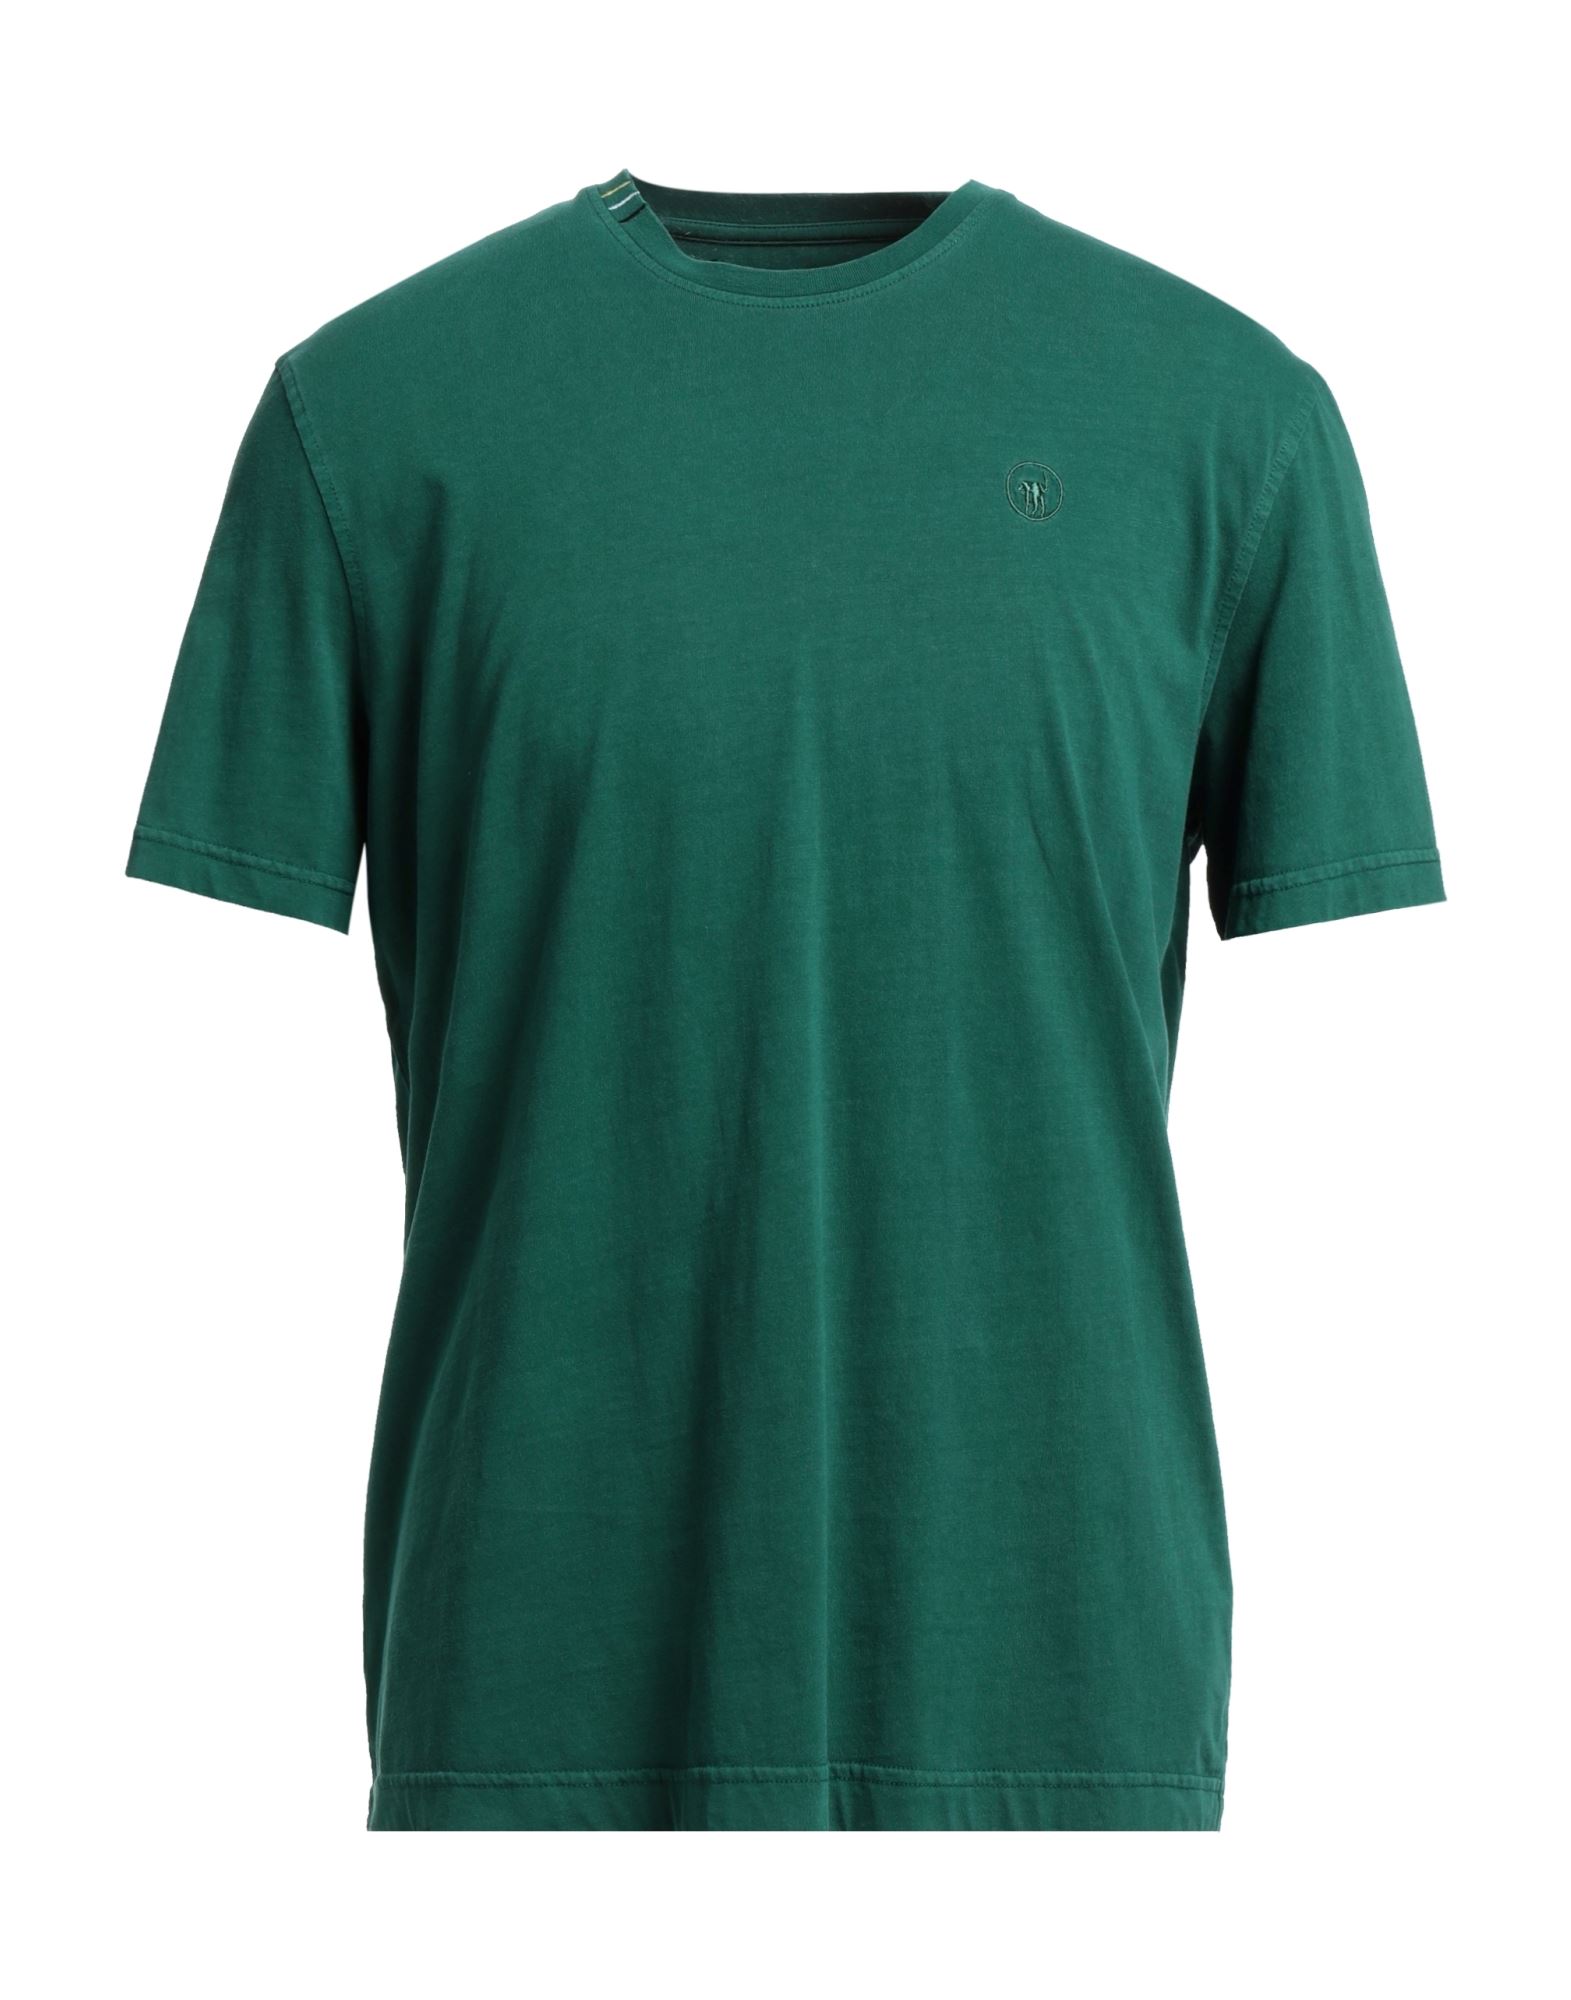 Ciesse Piumini T-shirts In Dark Green